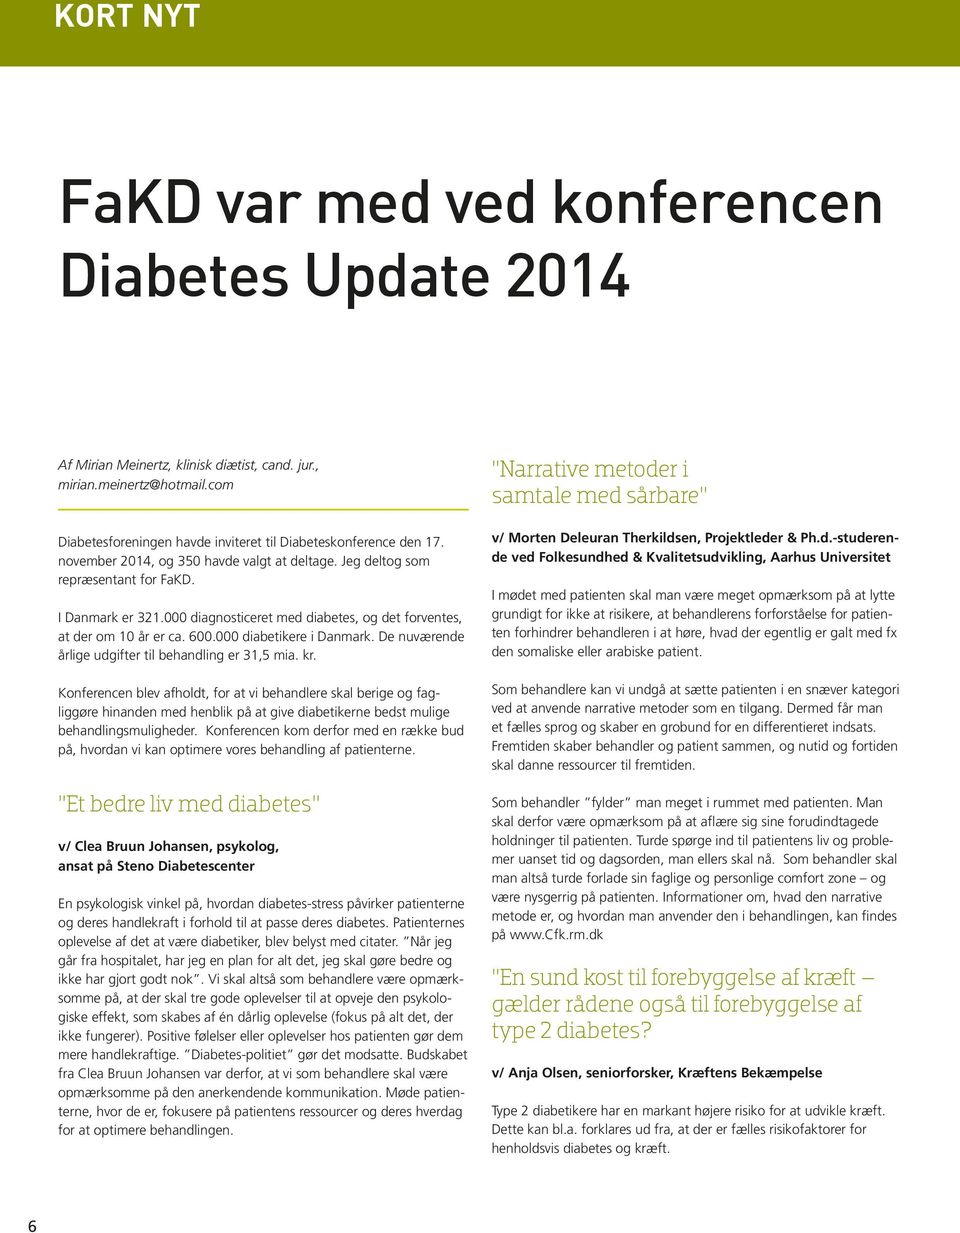 000 diagnosticeret med diabetes, og det forventes, at der om 10 år er ca. 600.000 diabetikere i Danmark. De nuværende årlige udgifter til behandling er 31,5 mia. kr.